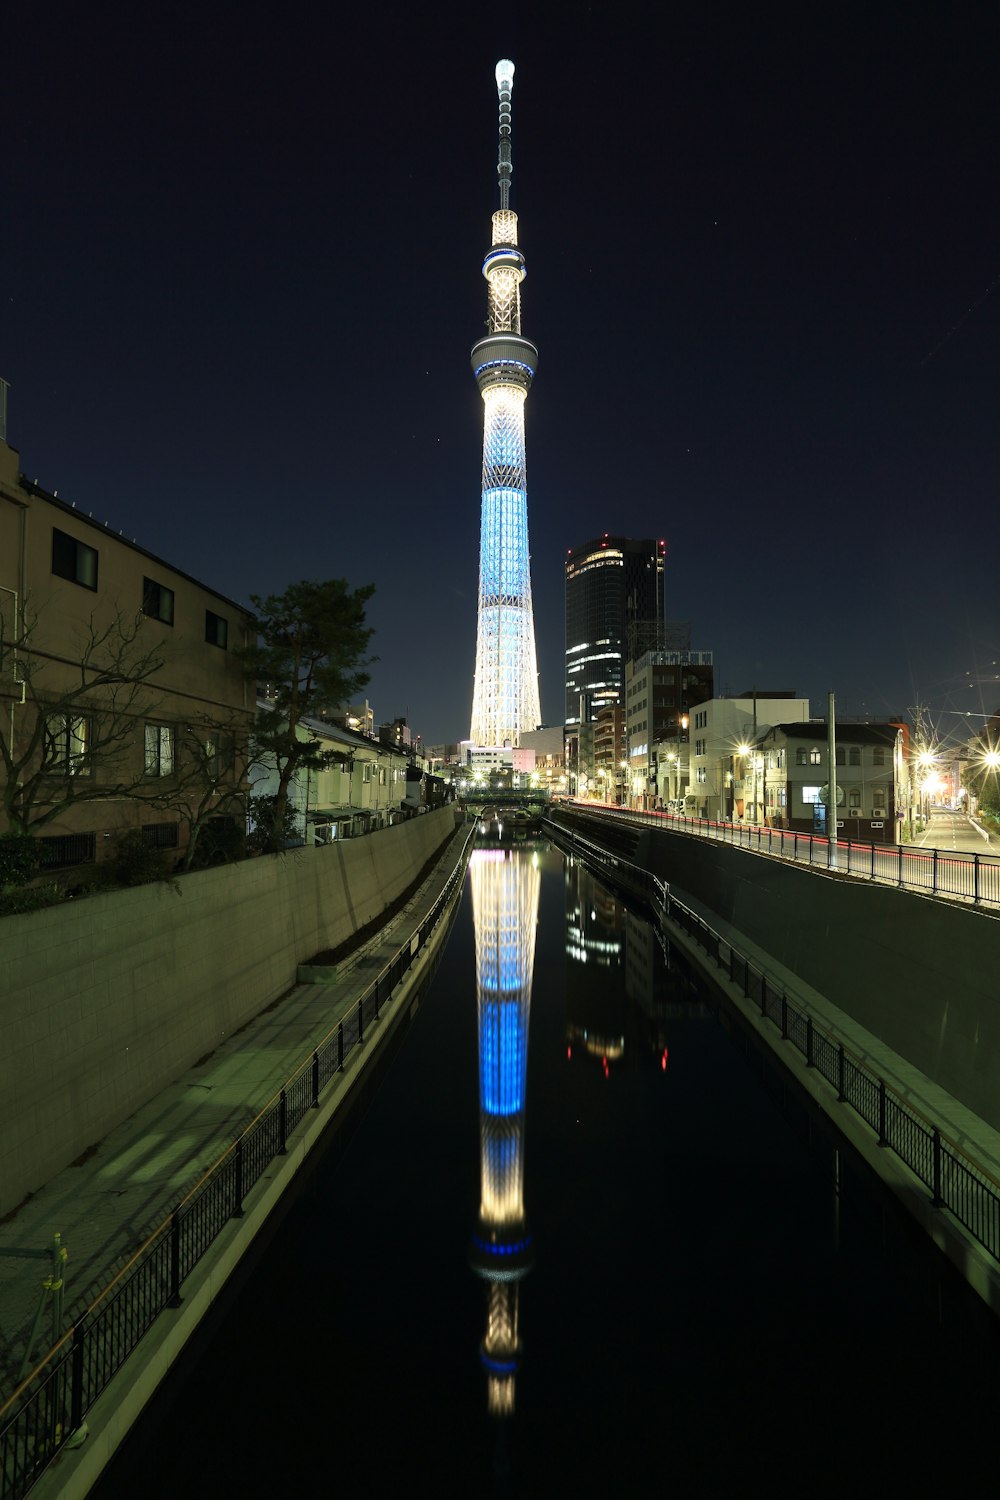 Torre illuminata blu e bianca durante la notte